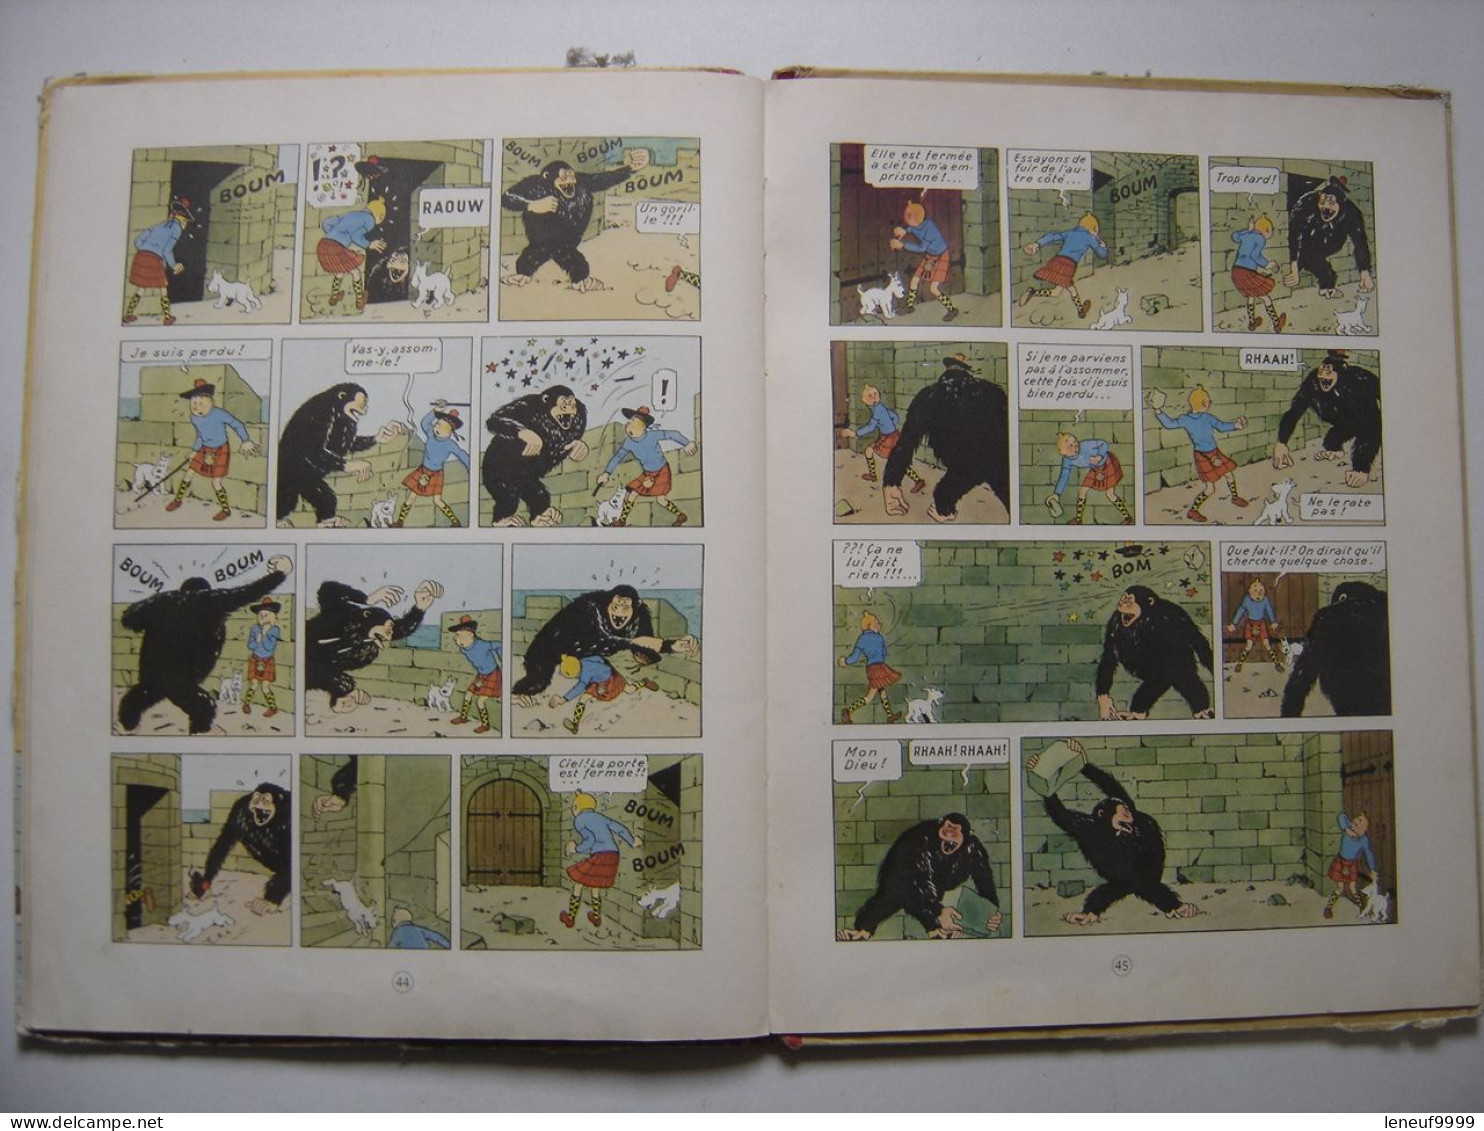 L'Ile noire HERGE Les aventures de Tintin 1958 Casterman